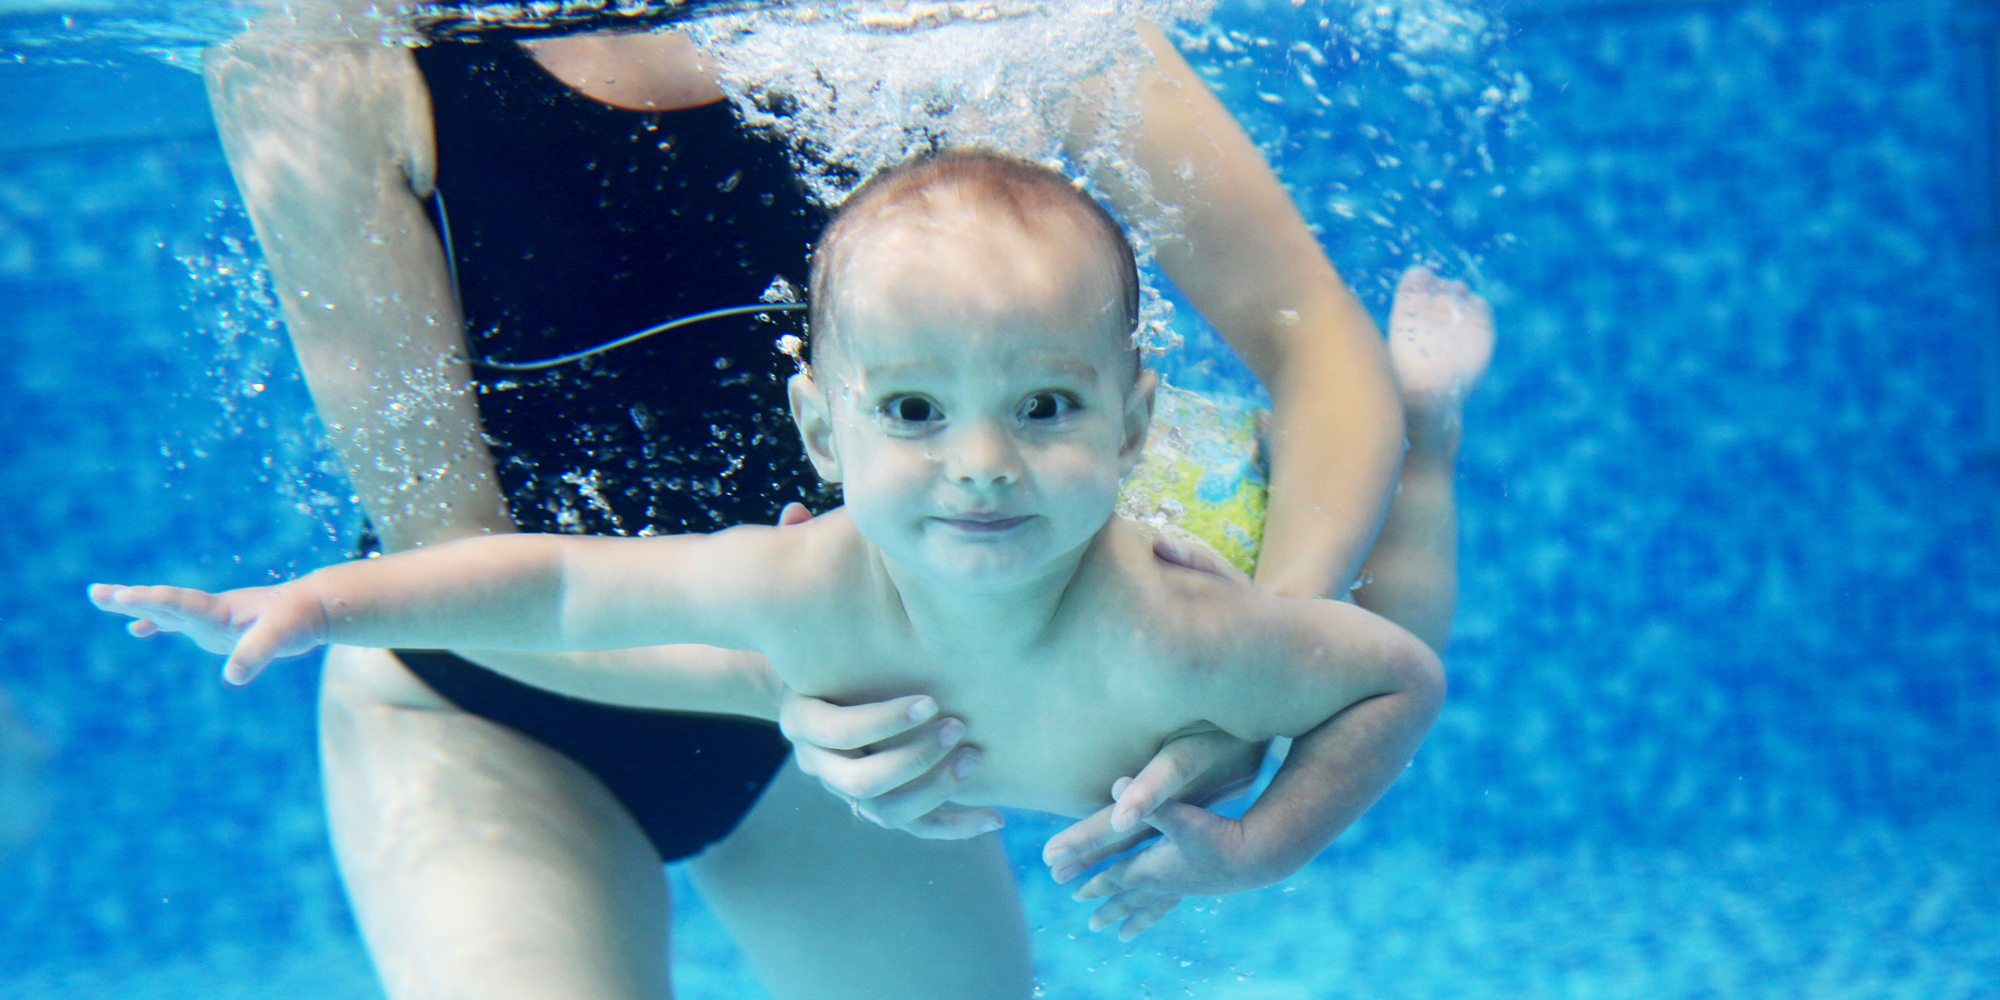 Gå til babysvømning i FOF Nordsjælland